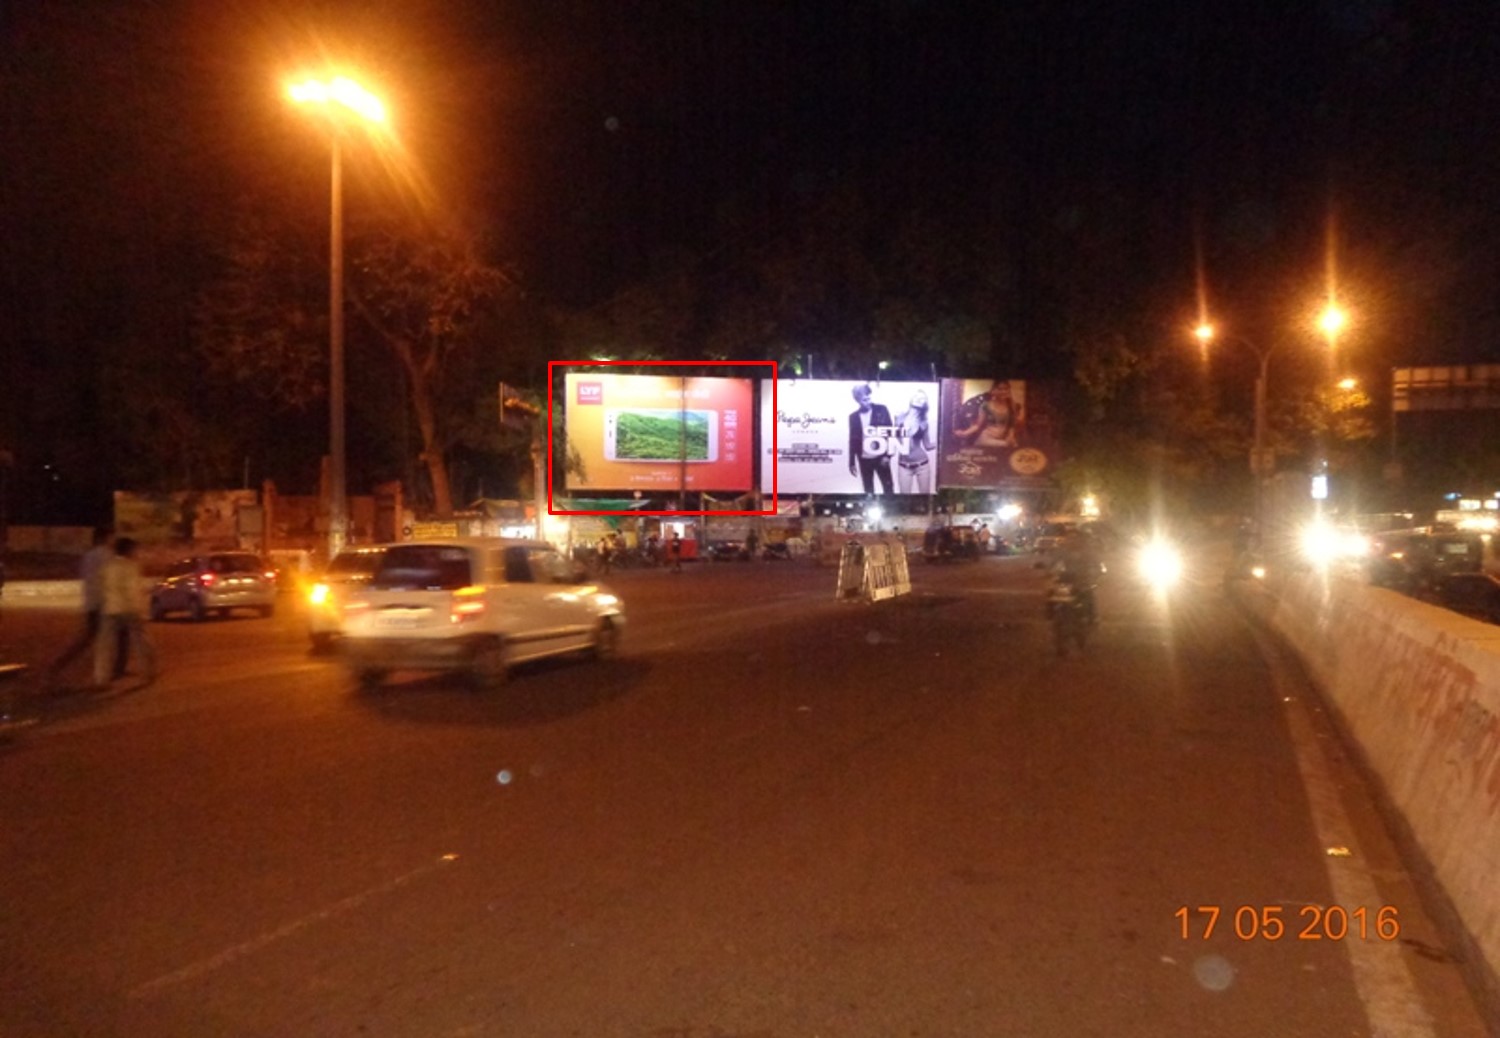 Jaistumbh Sq. Near Railway Station, Nagpur 